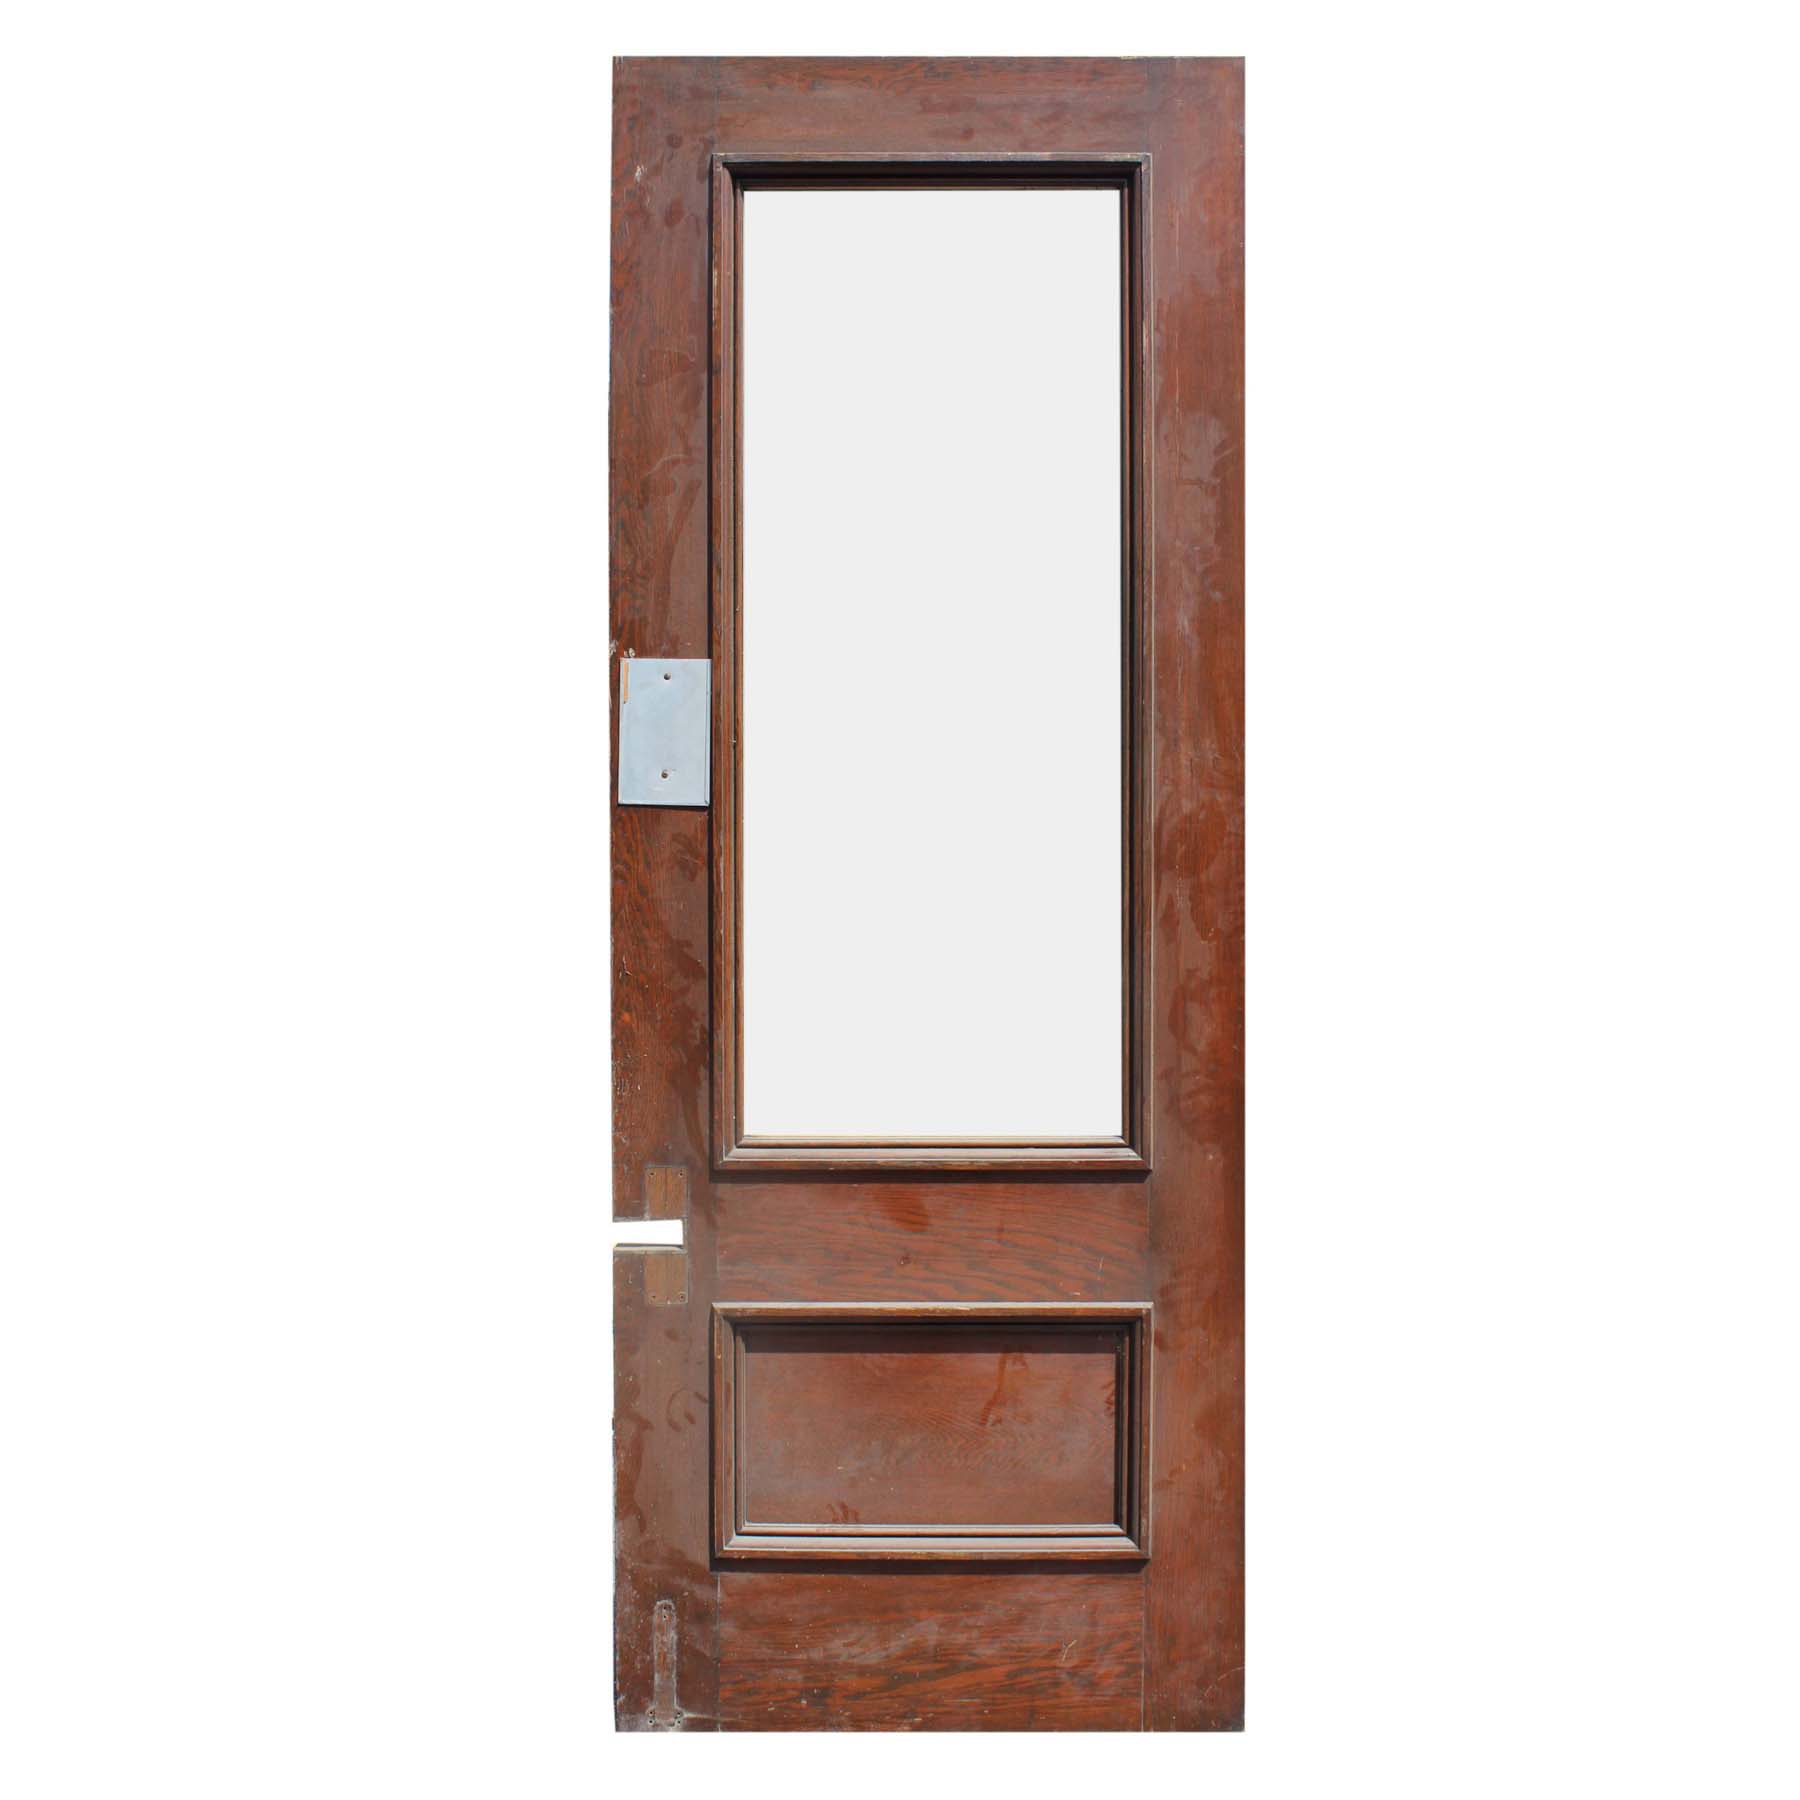 SOLD Reclaimed 36” Oak Door with Glass-68027